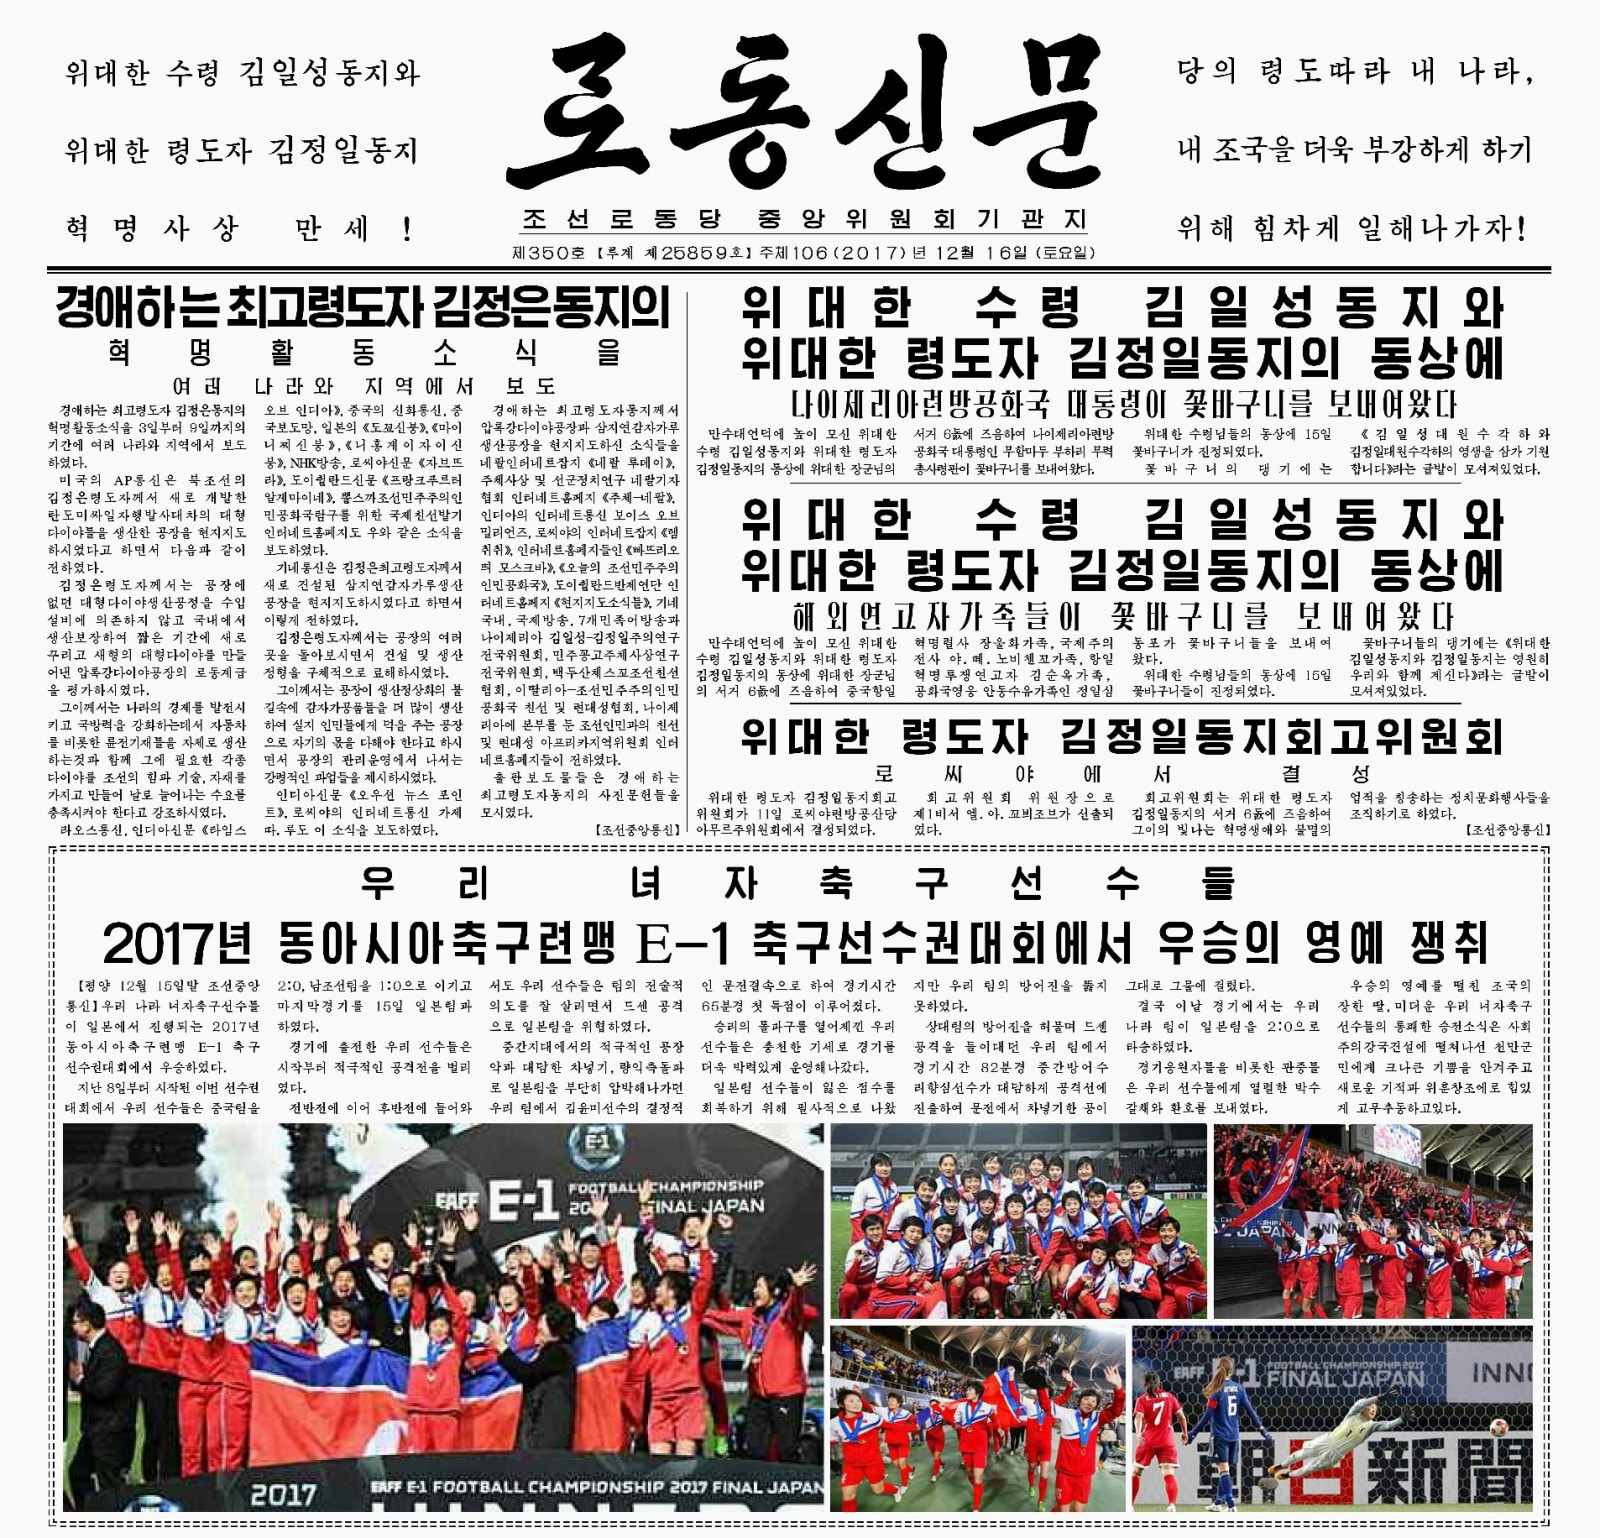 北朝鮮紙 女子優勝を大きく報道 サッカーのe 1選手権で